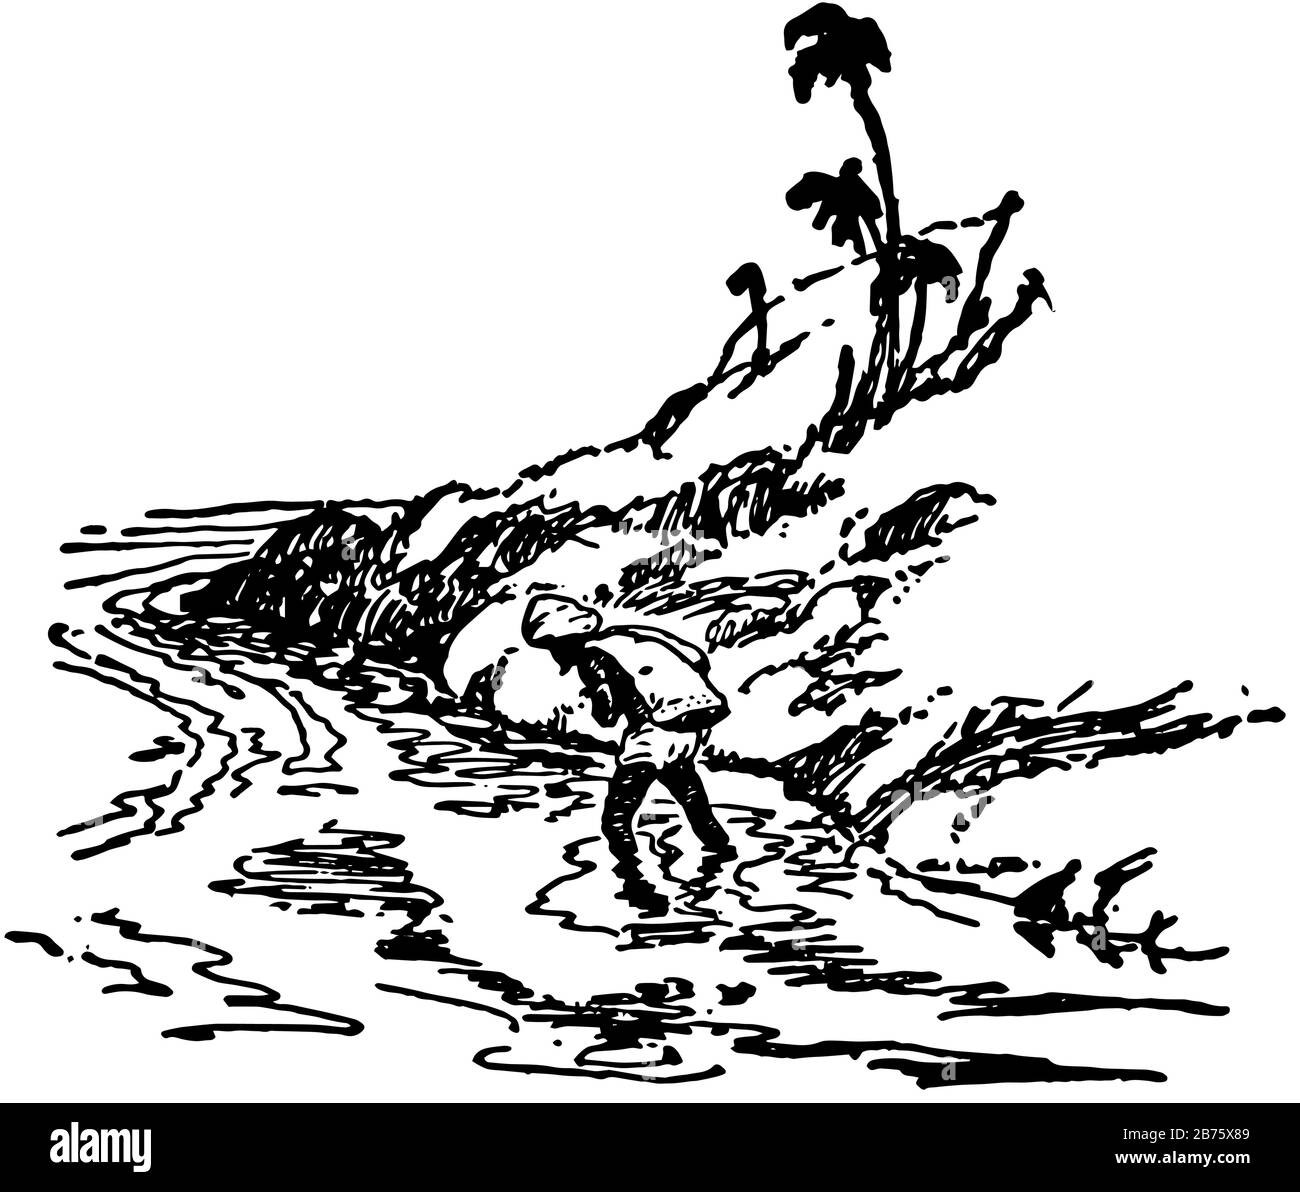 Overland Mail, cette scène montre un homme marchant à travers l'eau et la colline, vintage ligne dessin ou gravure illustration Illustration de Vecteur